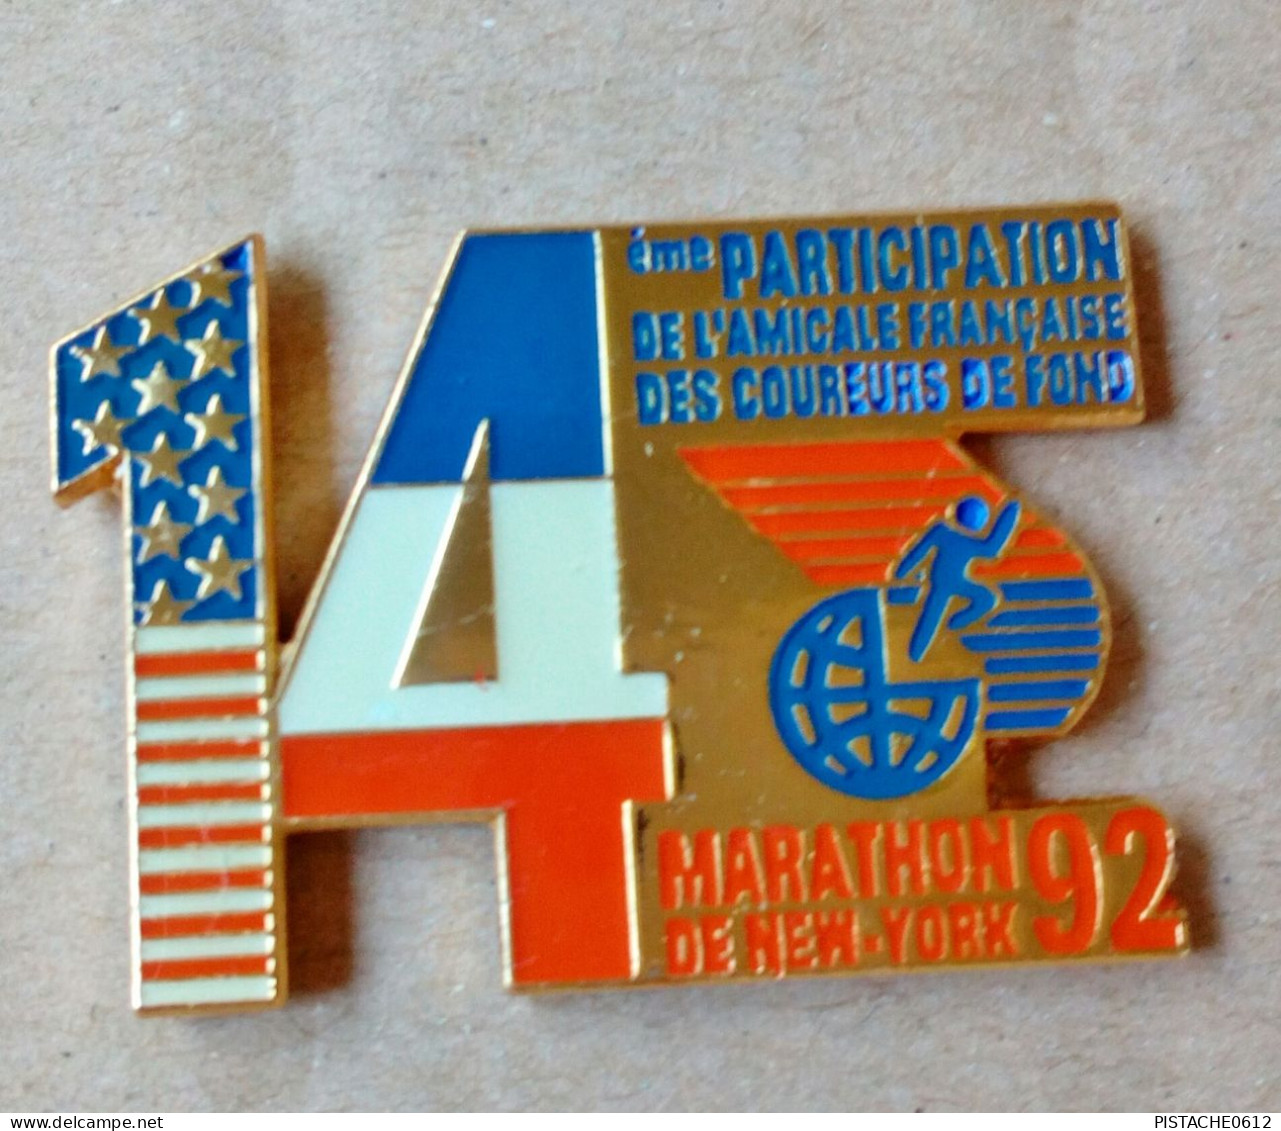 Pin's Athlétisme Marathon De New-York 92 14 Eme De L'Amicale Française Des Coureurs De Fond - Athletics